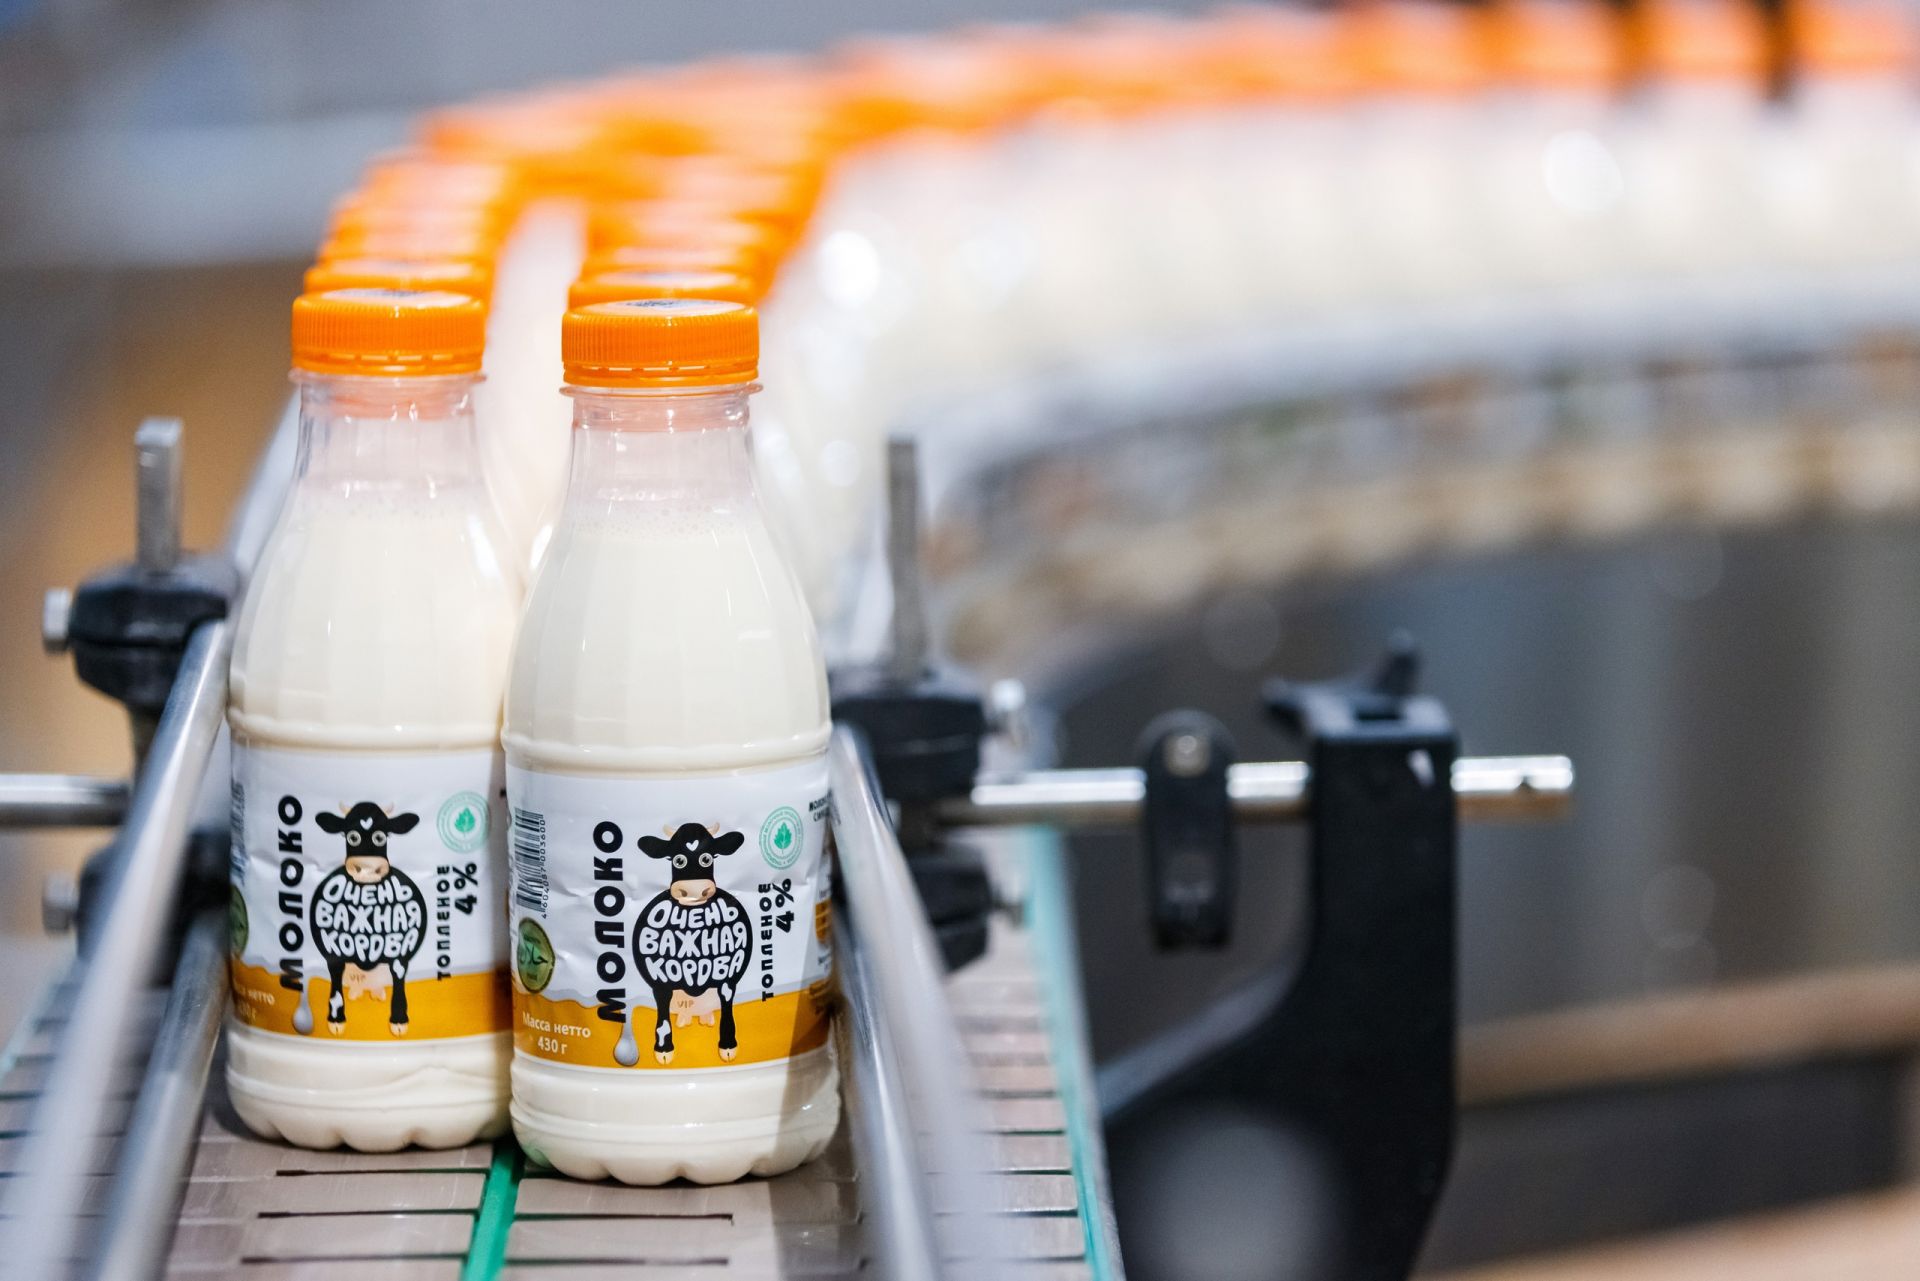 По итогам 2022 года Зеленодольский молочноперерабатывающий комбинат на 20,4% увеличил выпуск готовой продукции